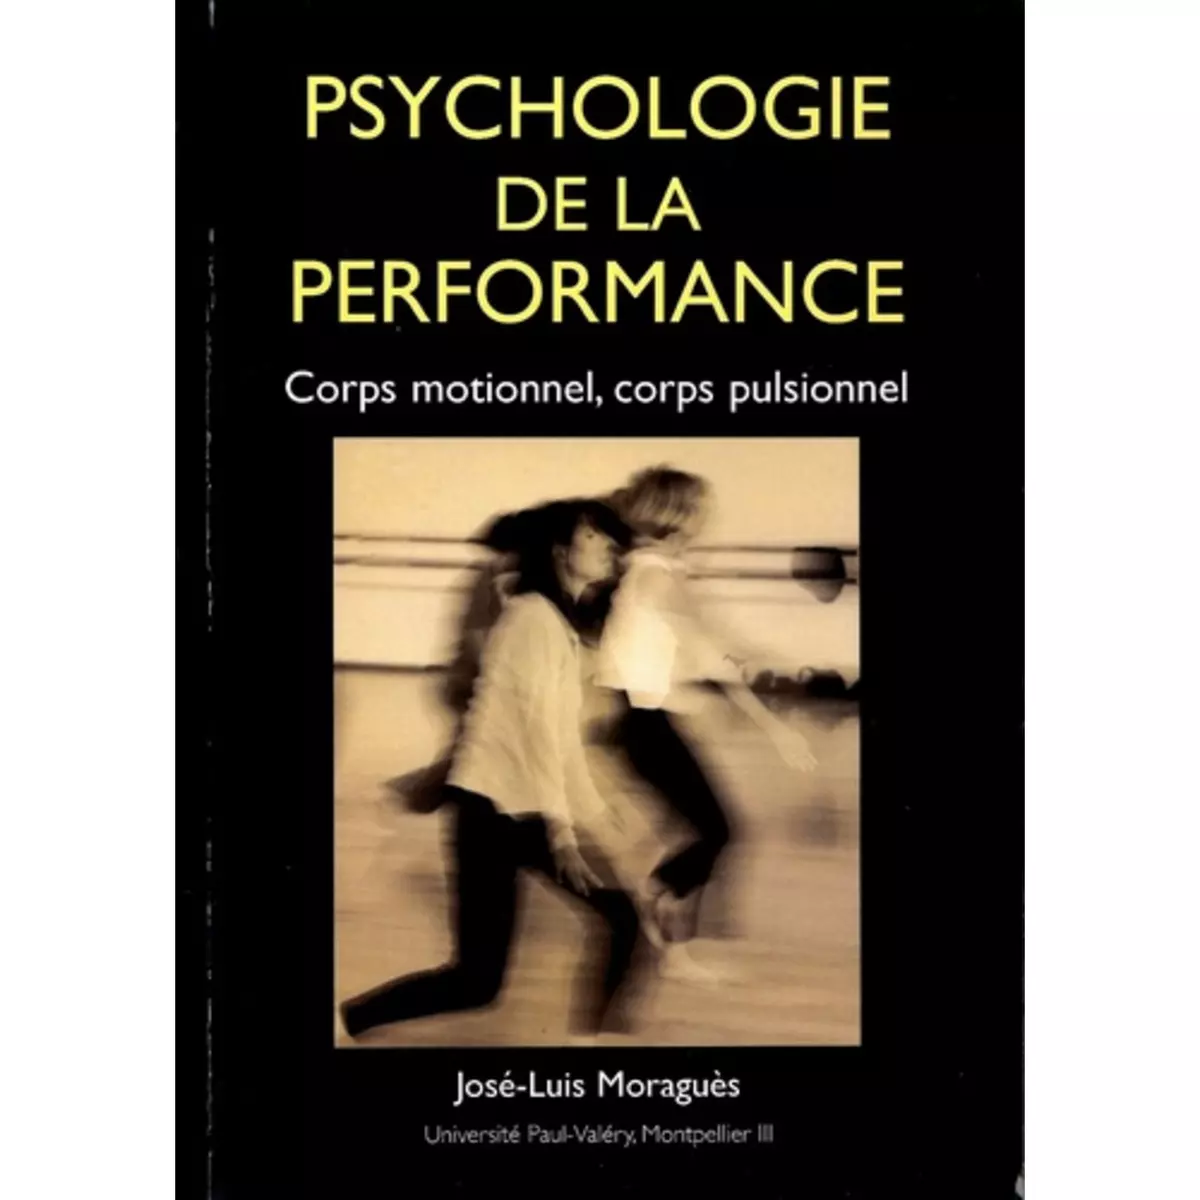  PSYCHOLOGIE DE LA PERFORMANCE. CORPS MOTIONNEL, CORPS PULSIONNEL, Moraguès José-Luis